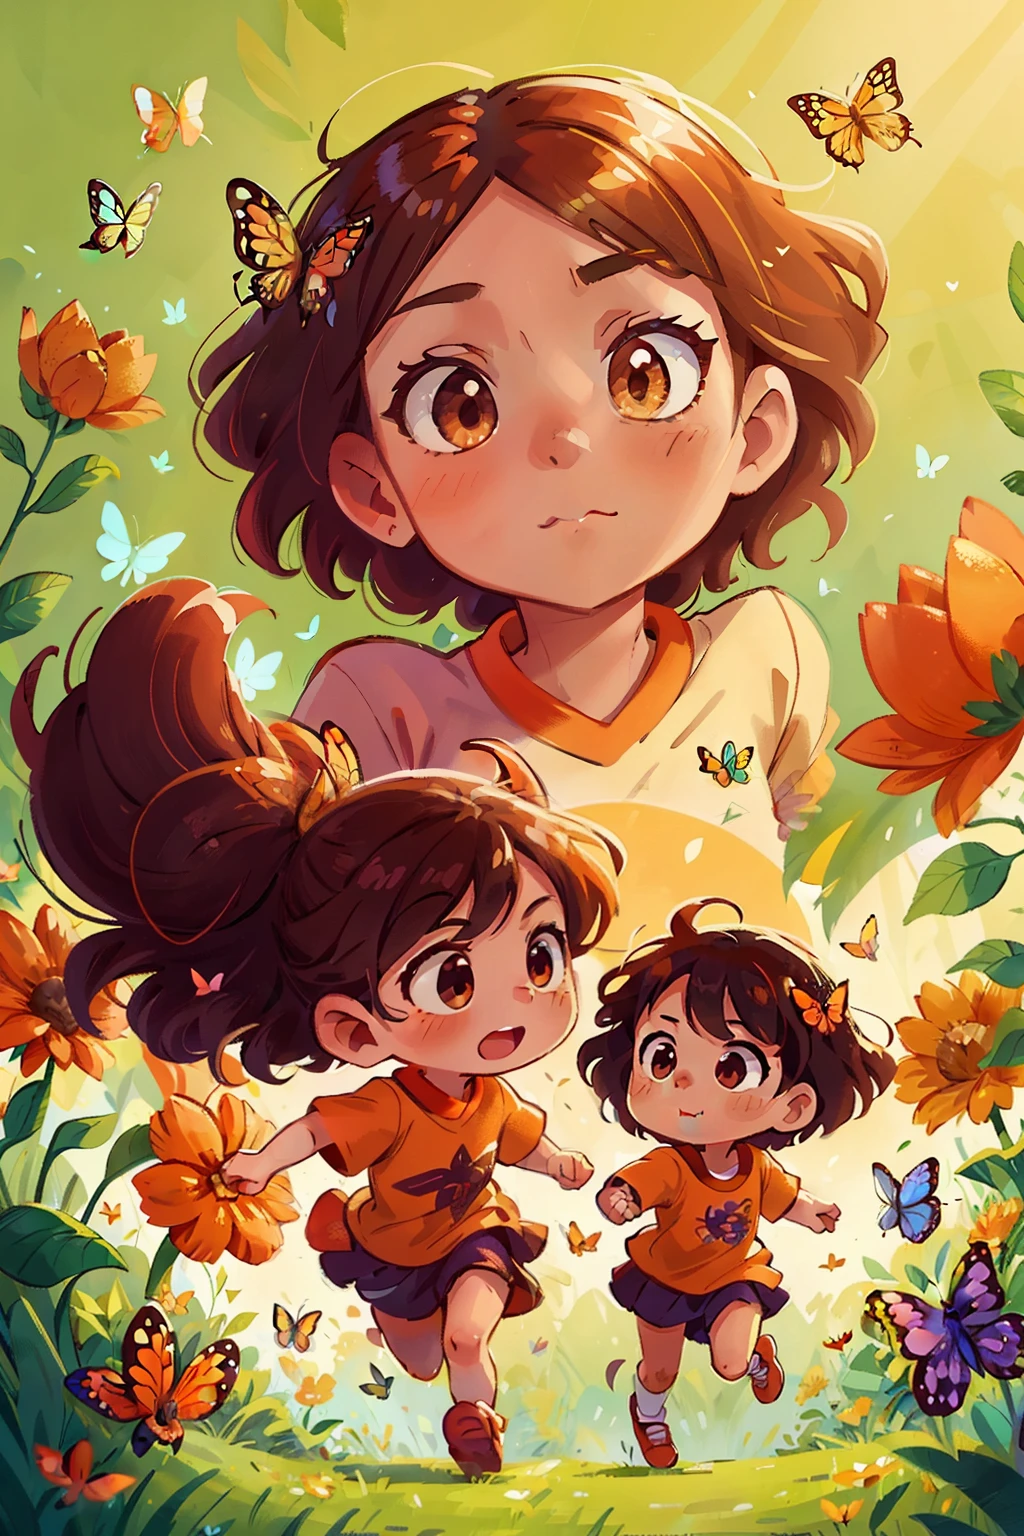 生成兩個非常年輕的女孩在花田裡快樂奔跑的圖像, 周圍環繞著各種顏色的蝴蝶, 精緻美麗的臉龐和迷人的橙色眼睛, 鋒利的 , 從上面看